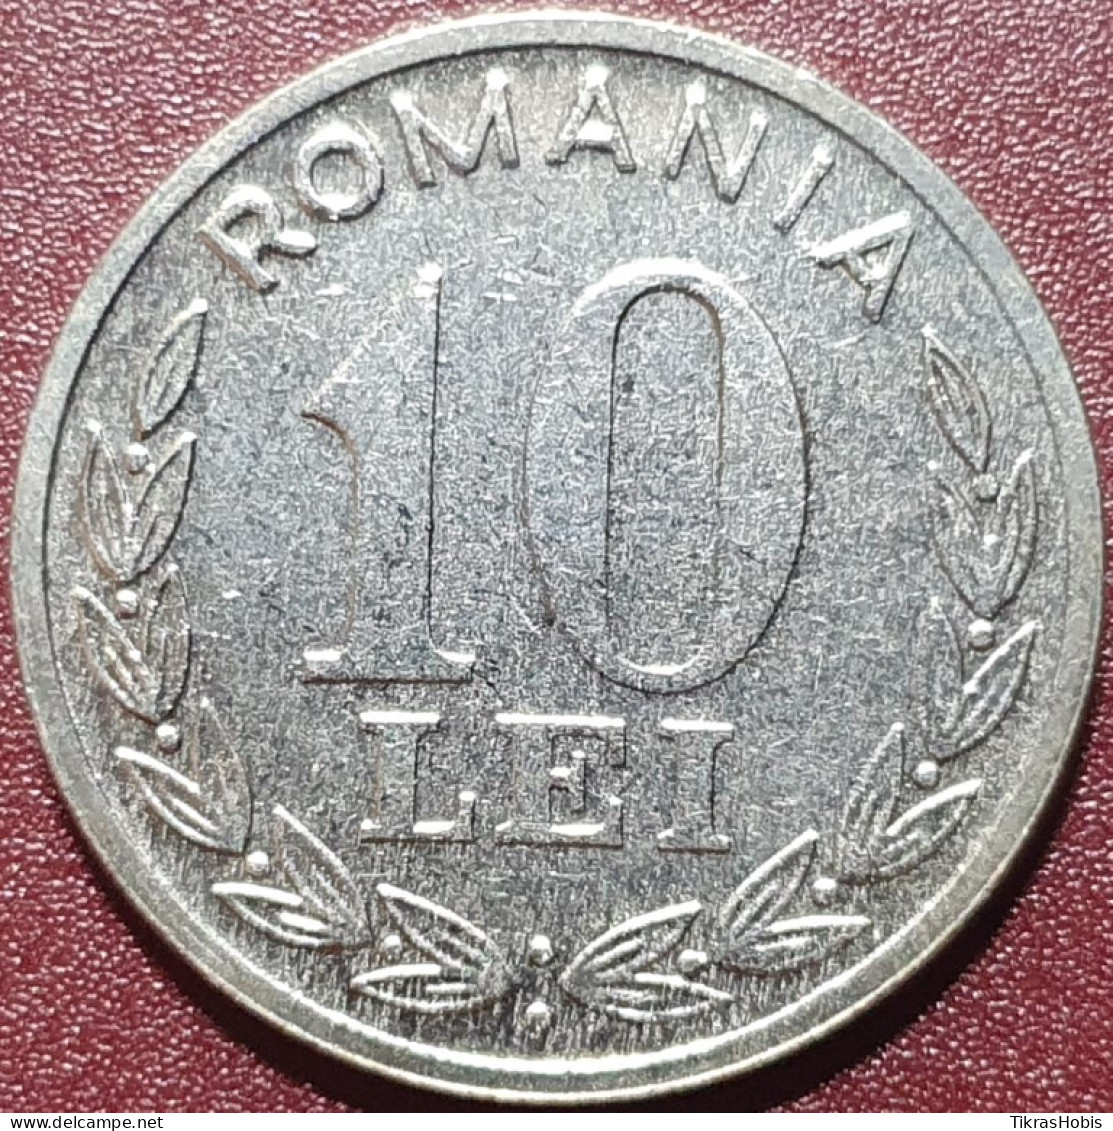 Romania 10 Leo, 1995 Km116 - Roemenië